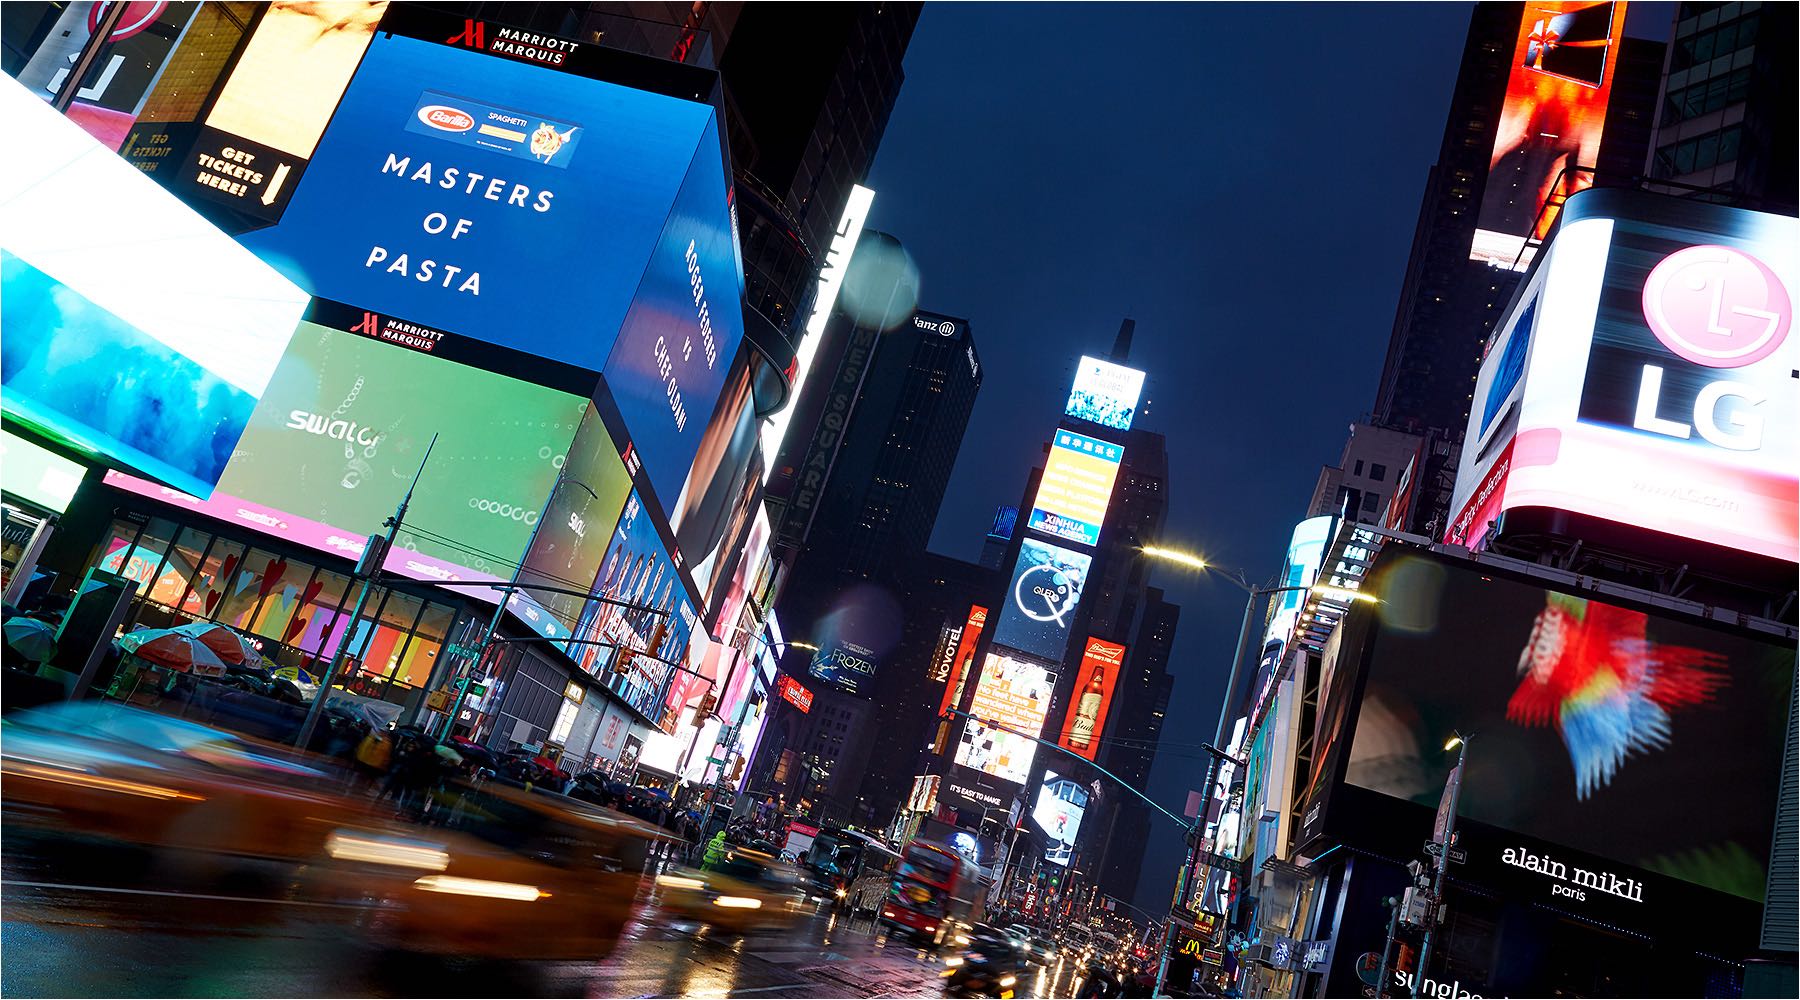  Reportagefotografie. Leben in New York. Zur Rush Our am Times Square in NYC. On Location Fotografie mit vorhandenem Licht. Copyright by Fotostudio Jörg Riethausen 